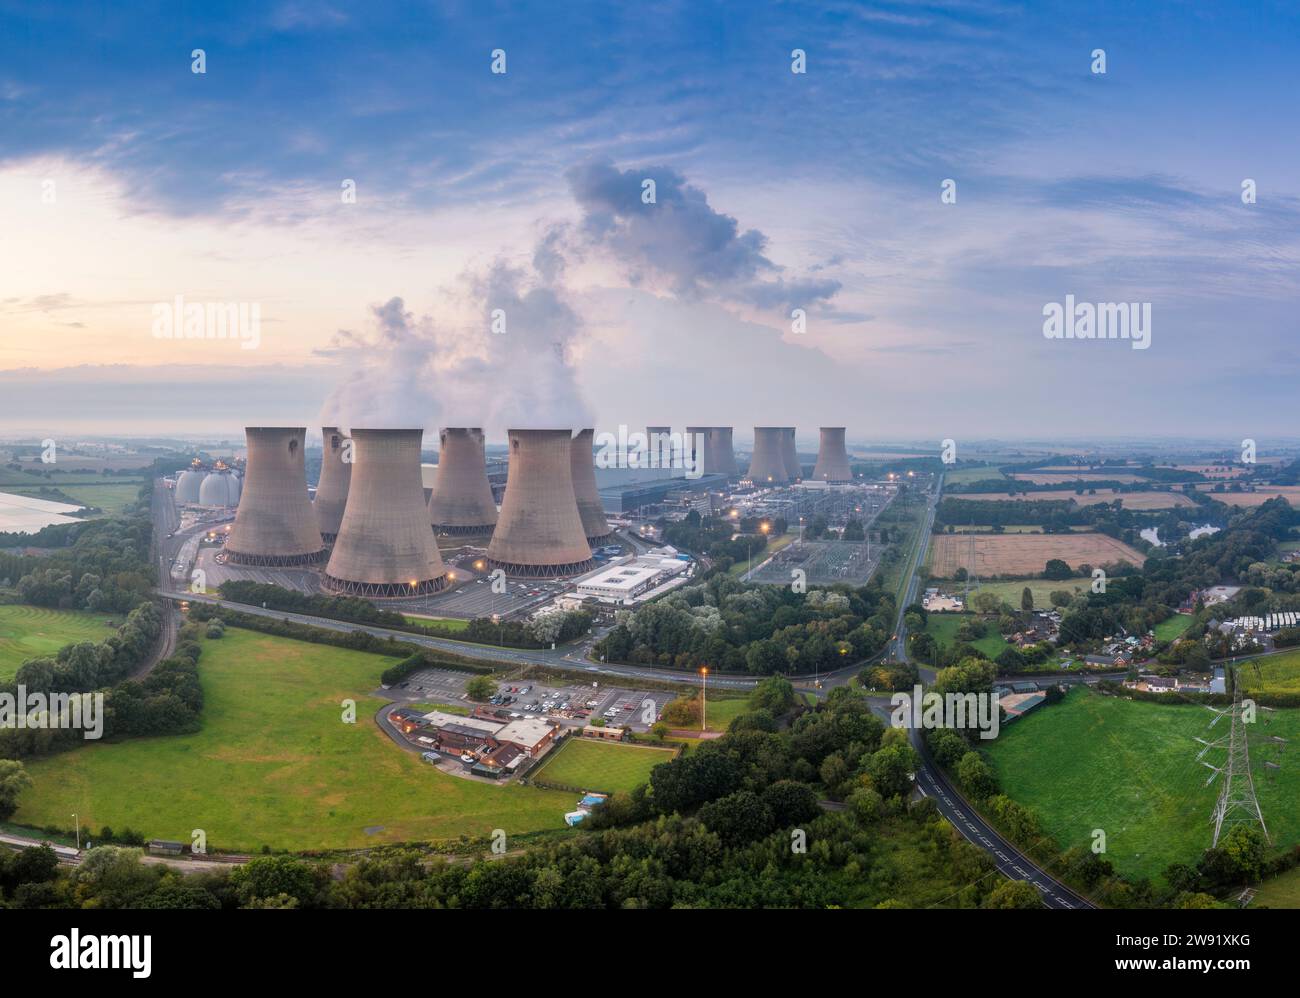 Royaume-Uni, Angleterre, Drax, vue aérienne de la centrale électrique de Drax Banque D'Images